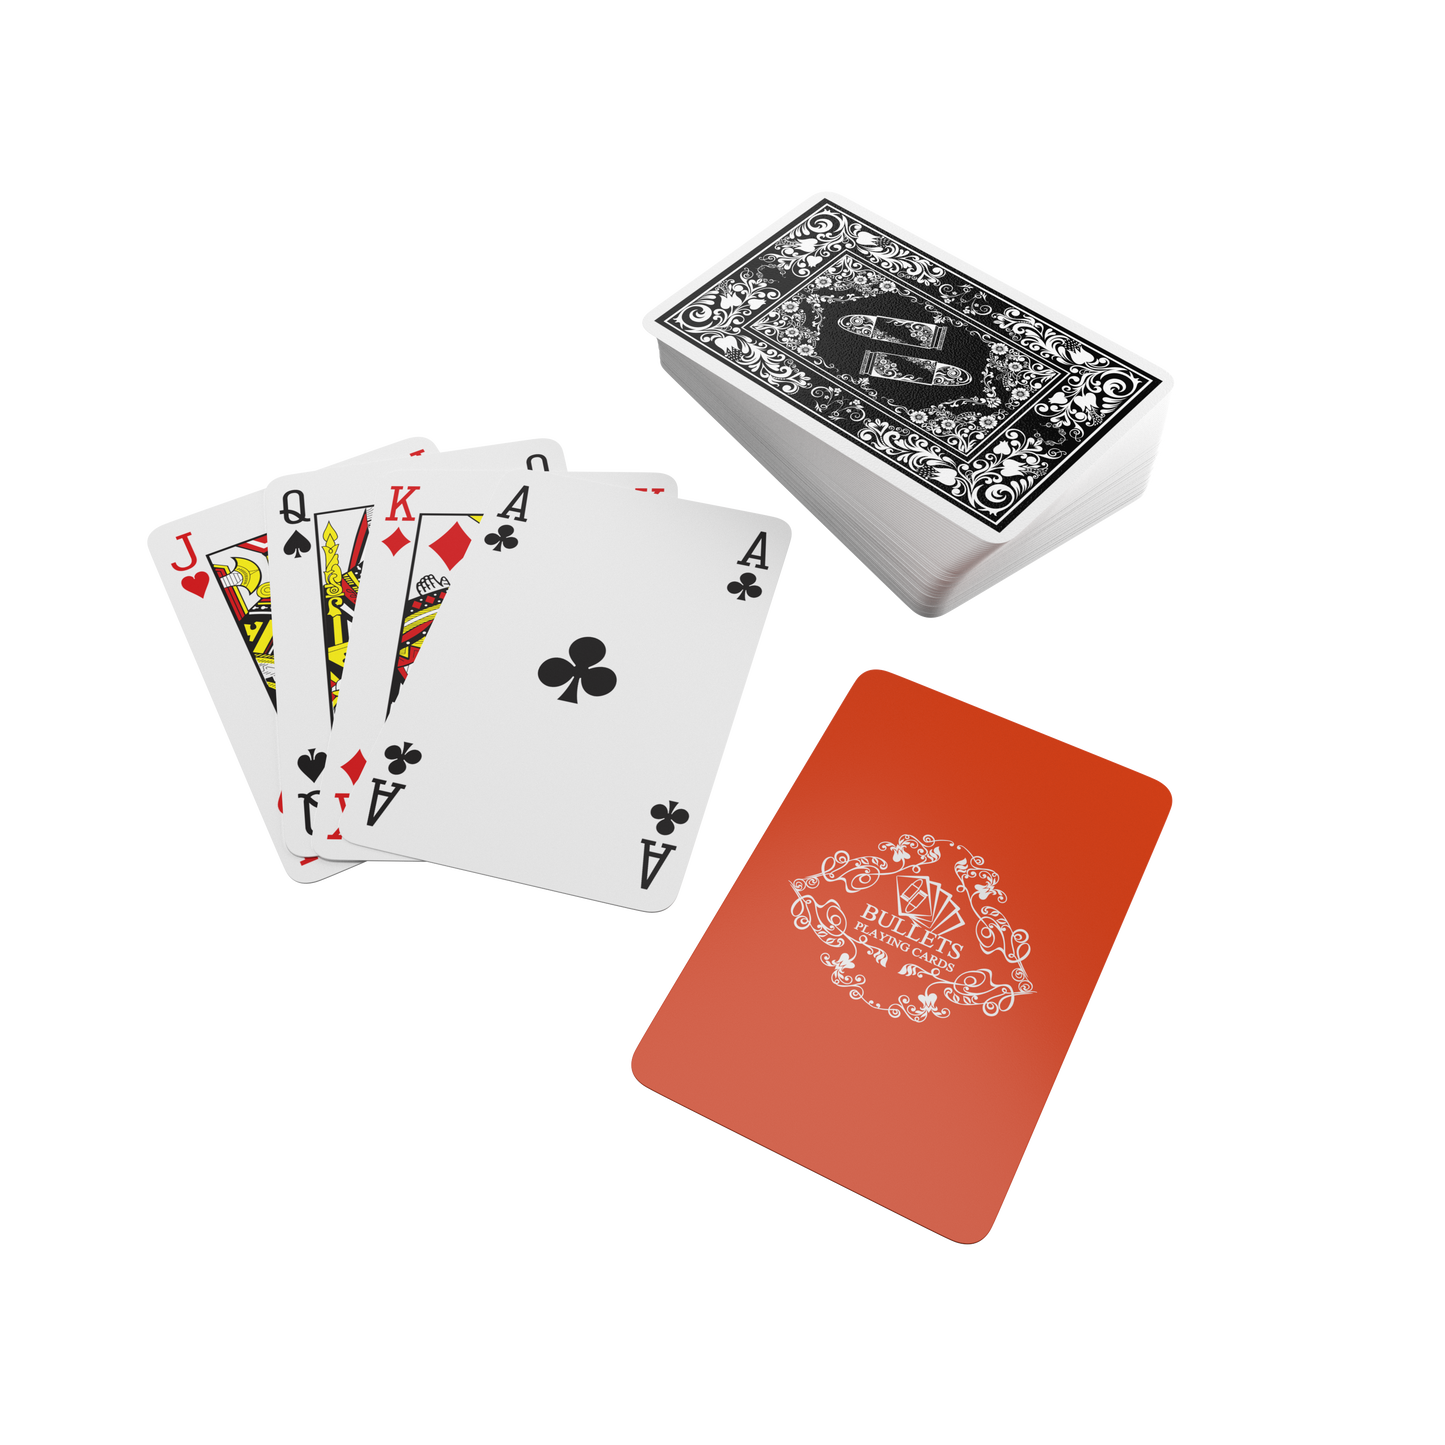 Backpacker Playing Cards, inklusive Plastik Spielkarten, Alu-Box und Spielregeln für 5 Reisespielen